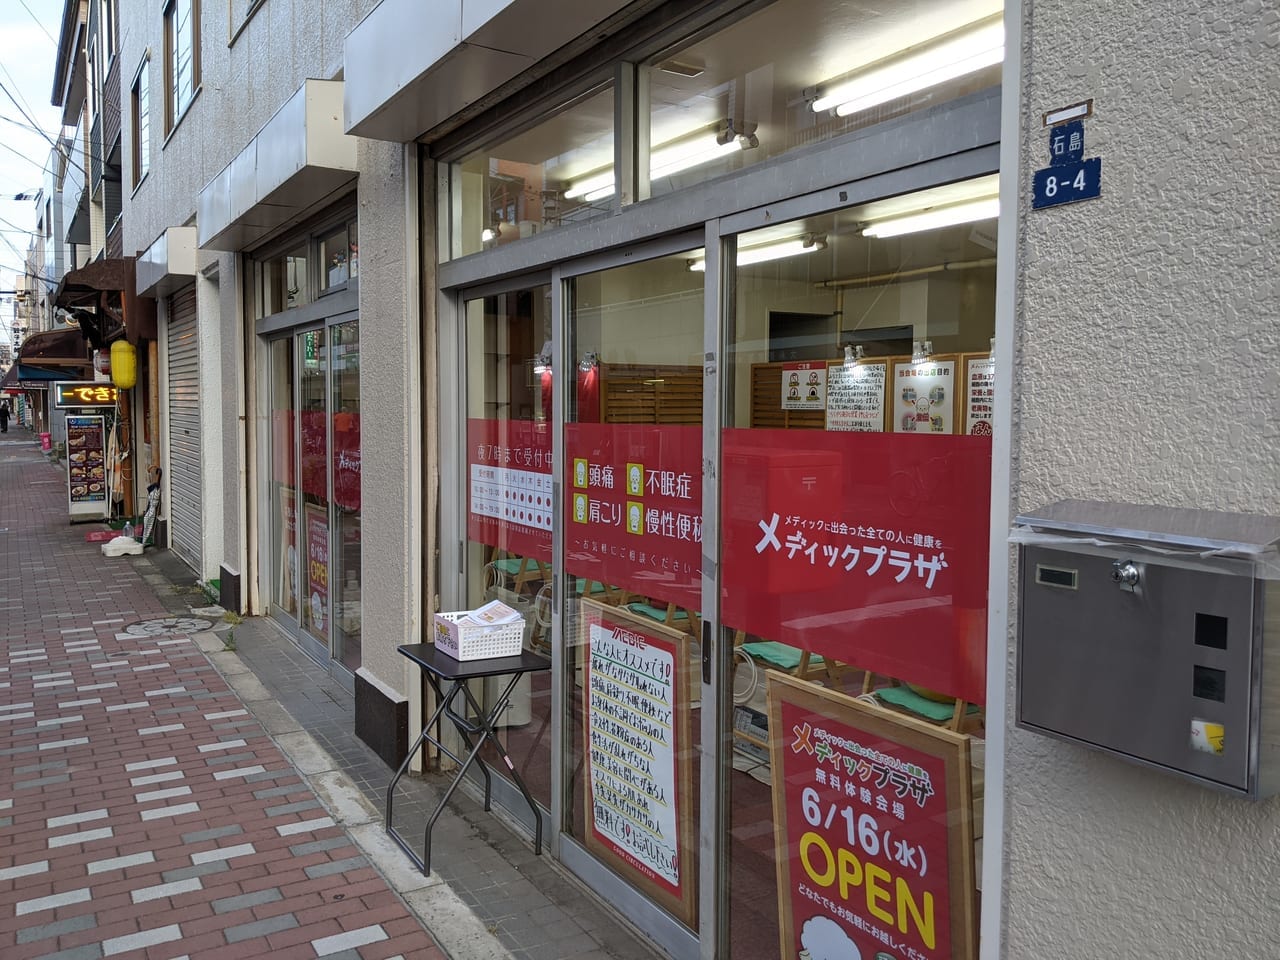 美術館通り（千田・石島地区）にオープンする「メディックプラザ」の外観